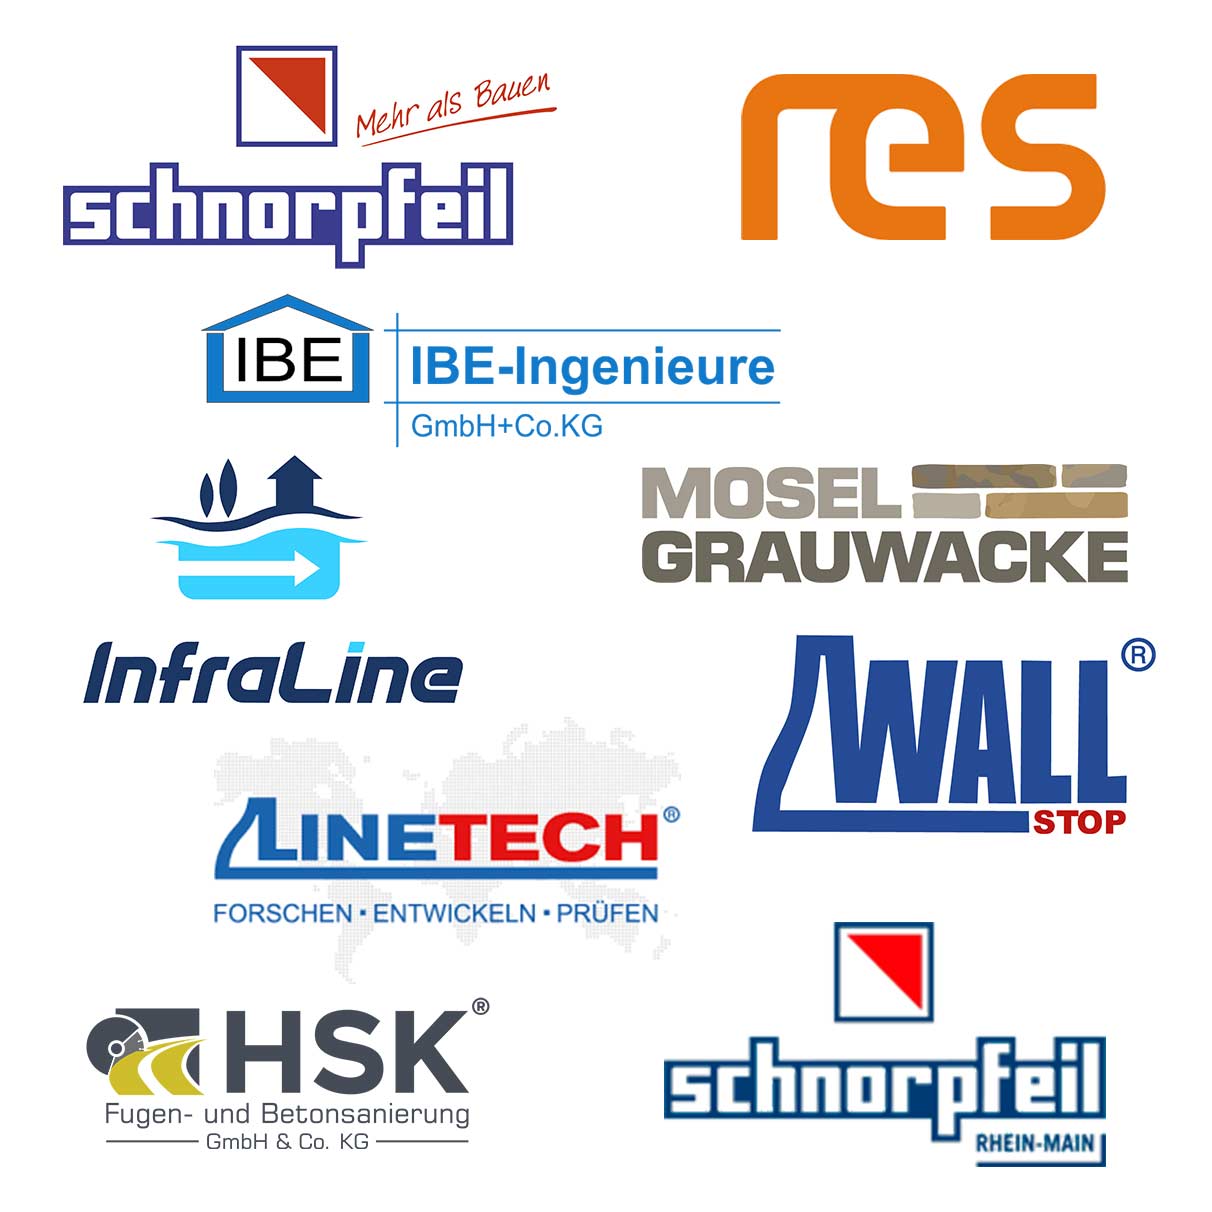 Die Logos meiner Kunden Schnorpfeil Bau, RES, Infraline, Wallstop, Linetech, Schnorpfeil Rhein-Main, HSK Fugen- und Betonsanierung, Schnorpfeil Baustoffe, IBE Ingenieure und weitere